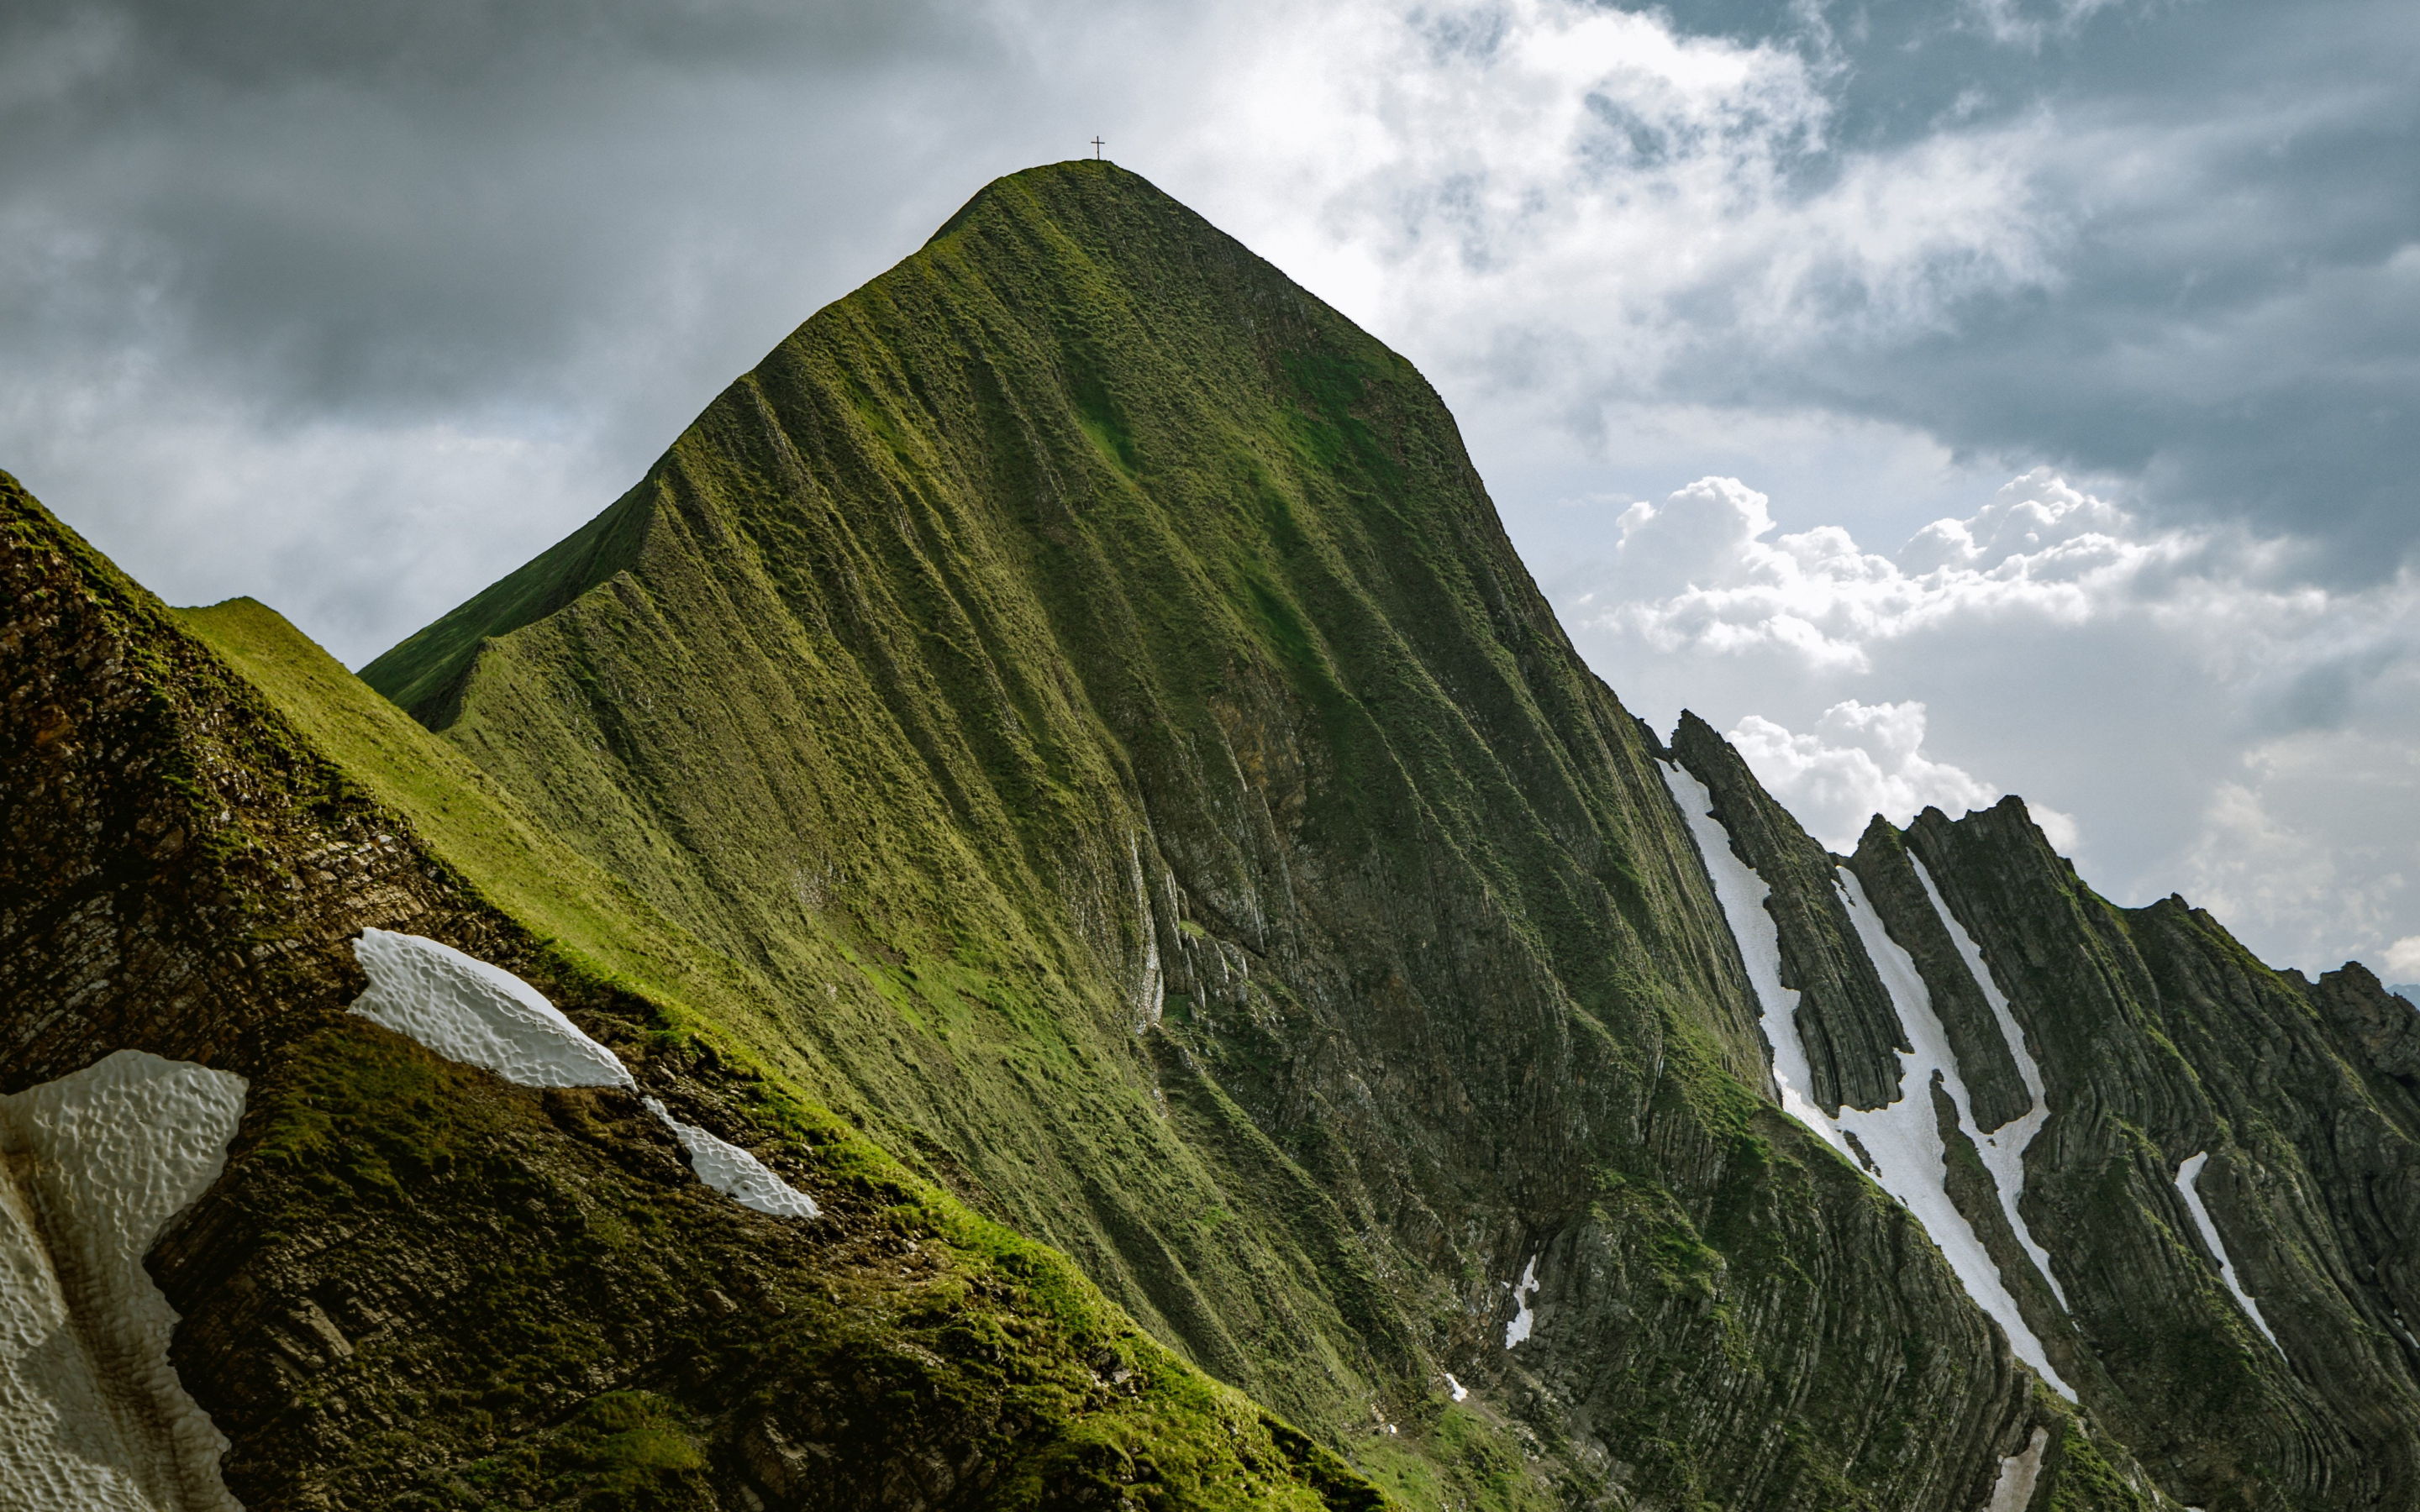 Green mountain, Balmi, Switzerland wallpaer, 2880x1800 wallpaper